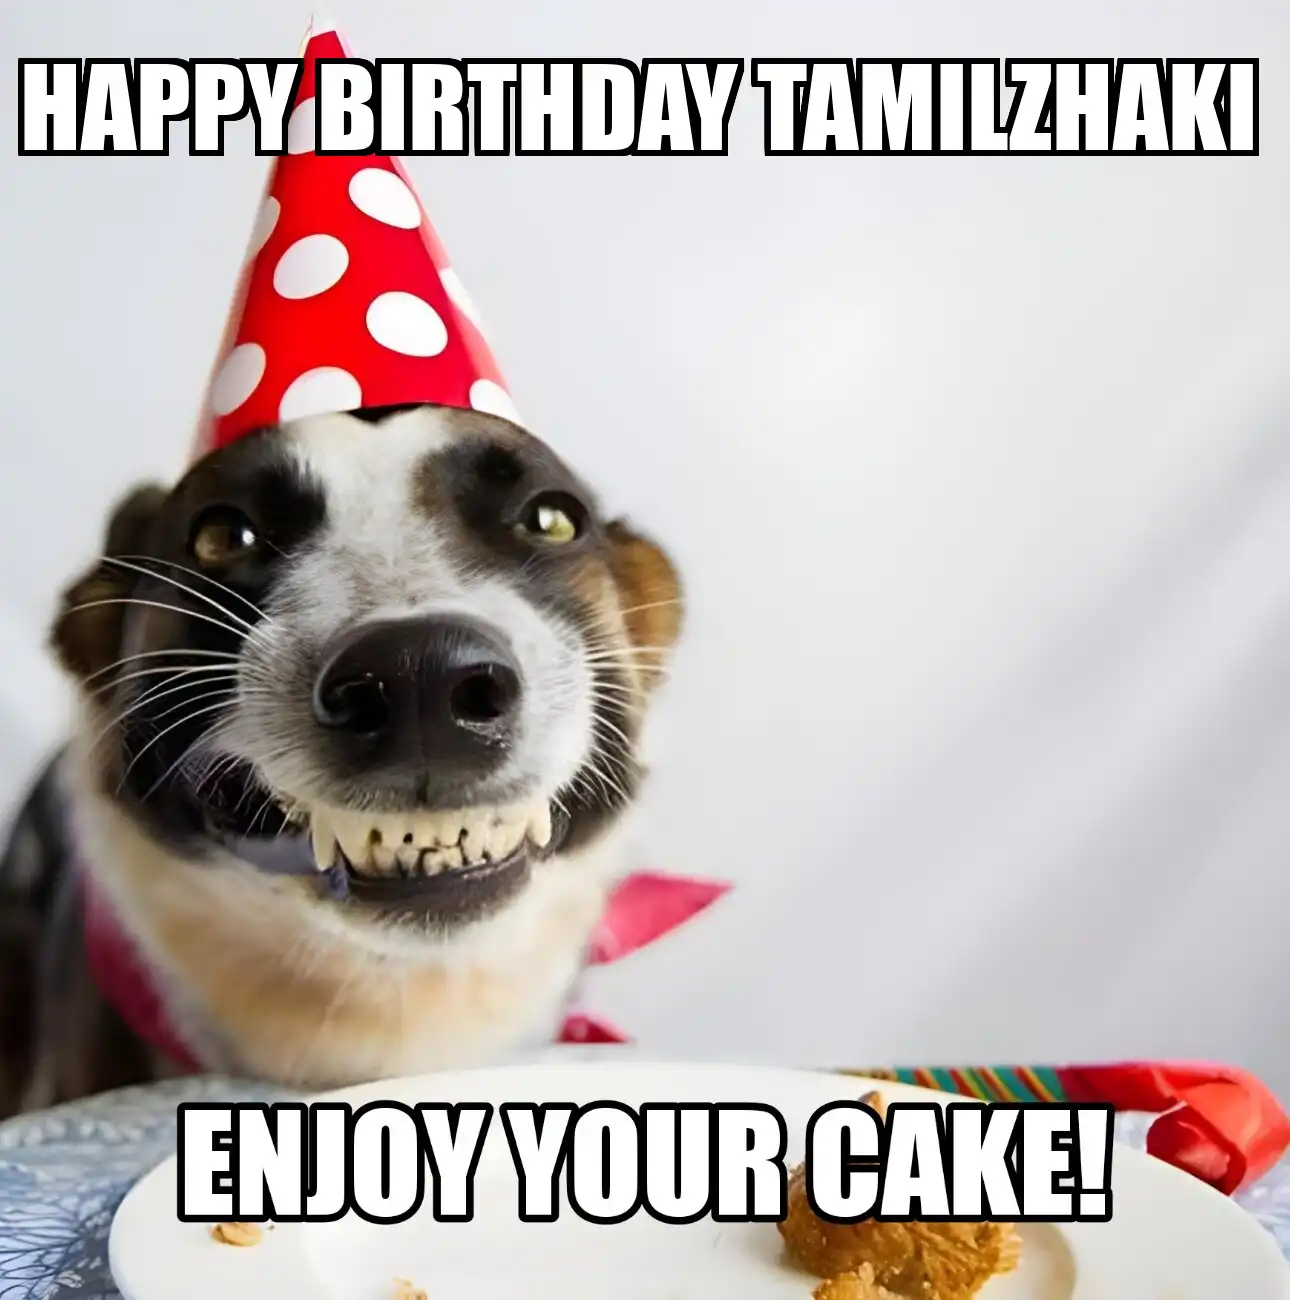 Happy Birthday Tamilzhaki Enjoy Your Cake Dog Meme